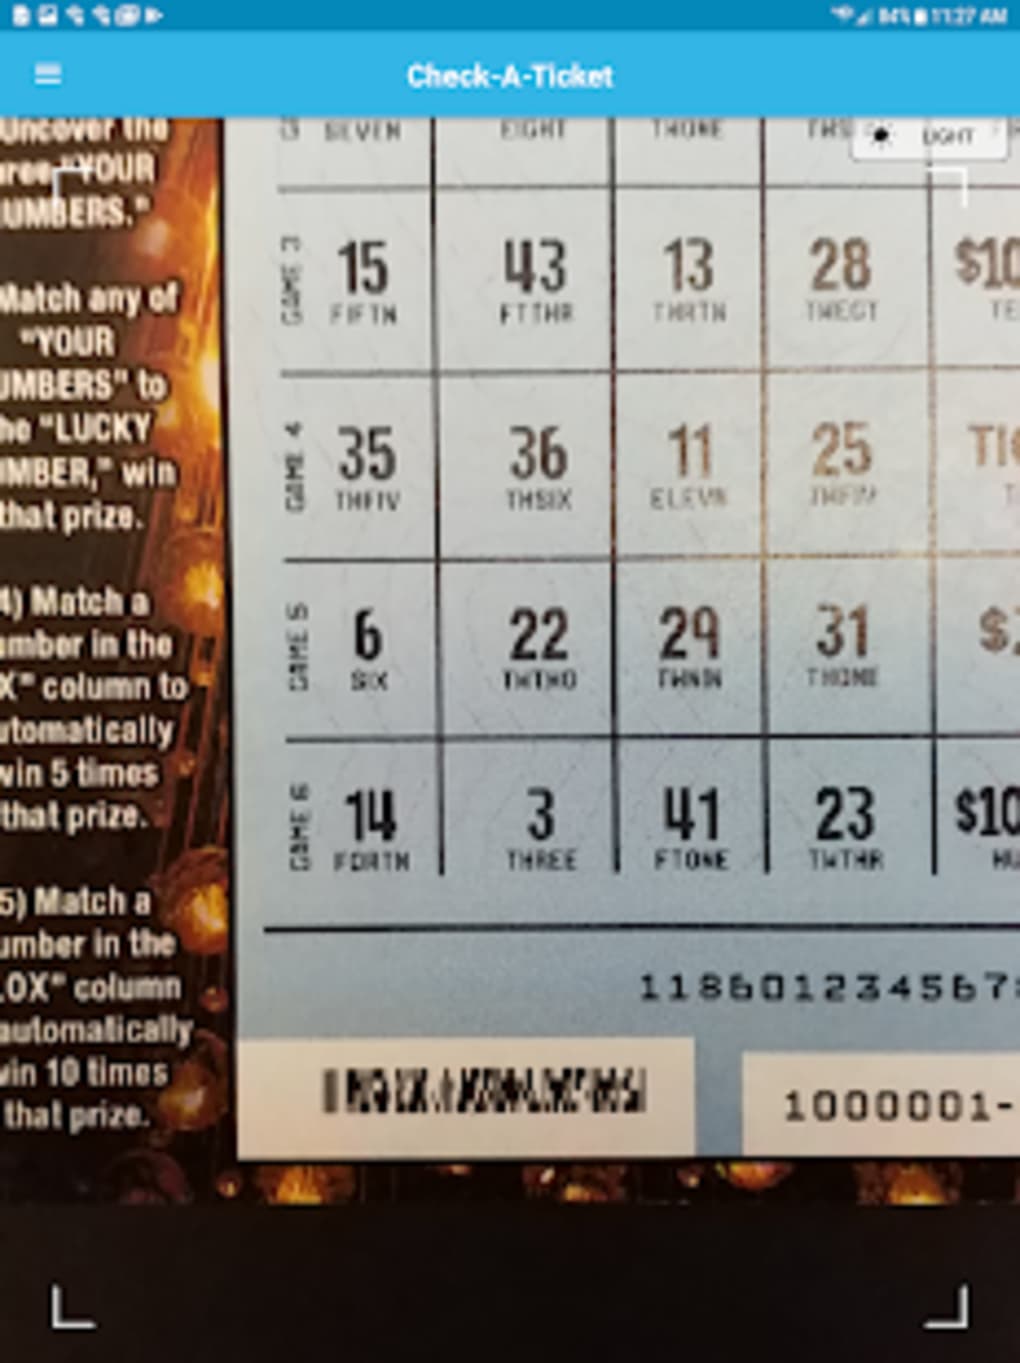 ca lottery.com quickpick